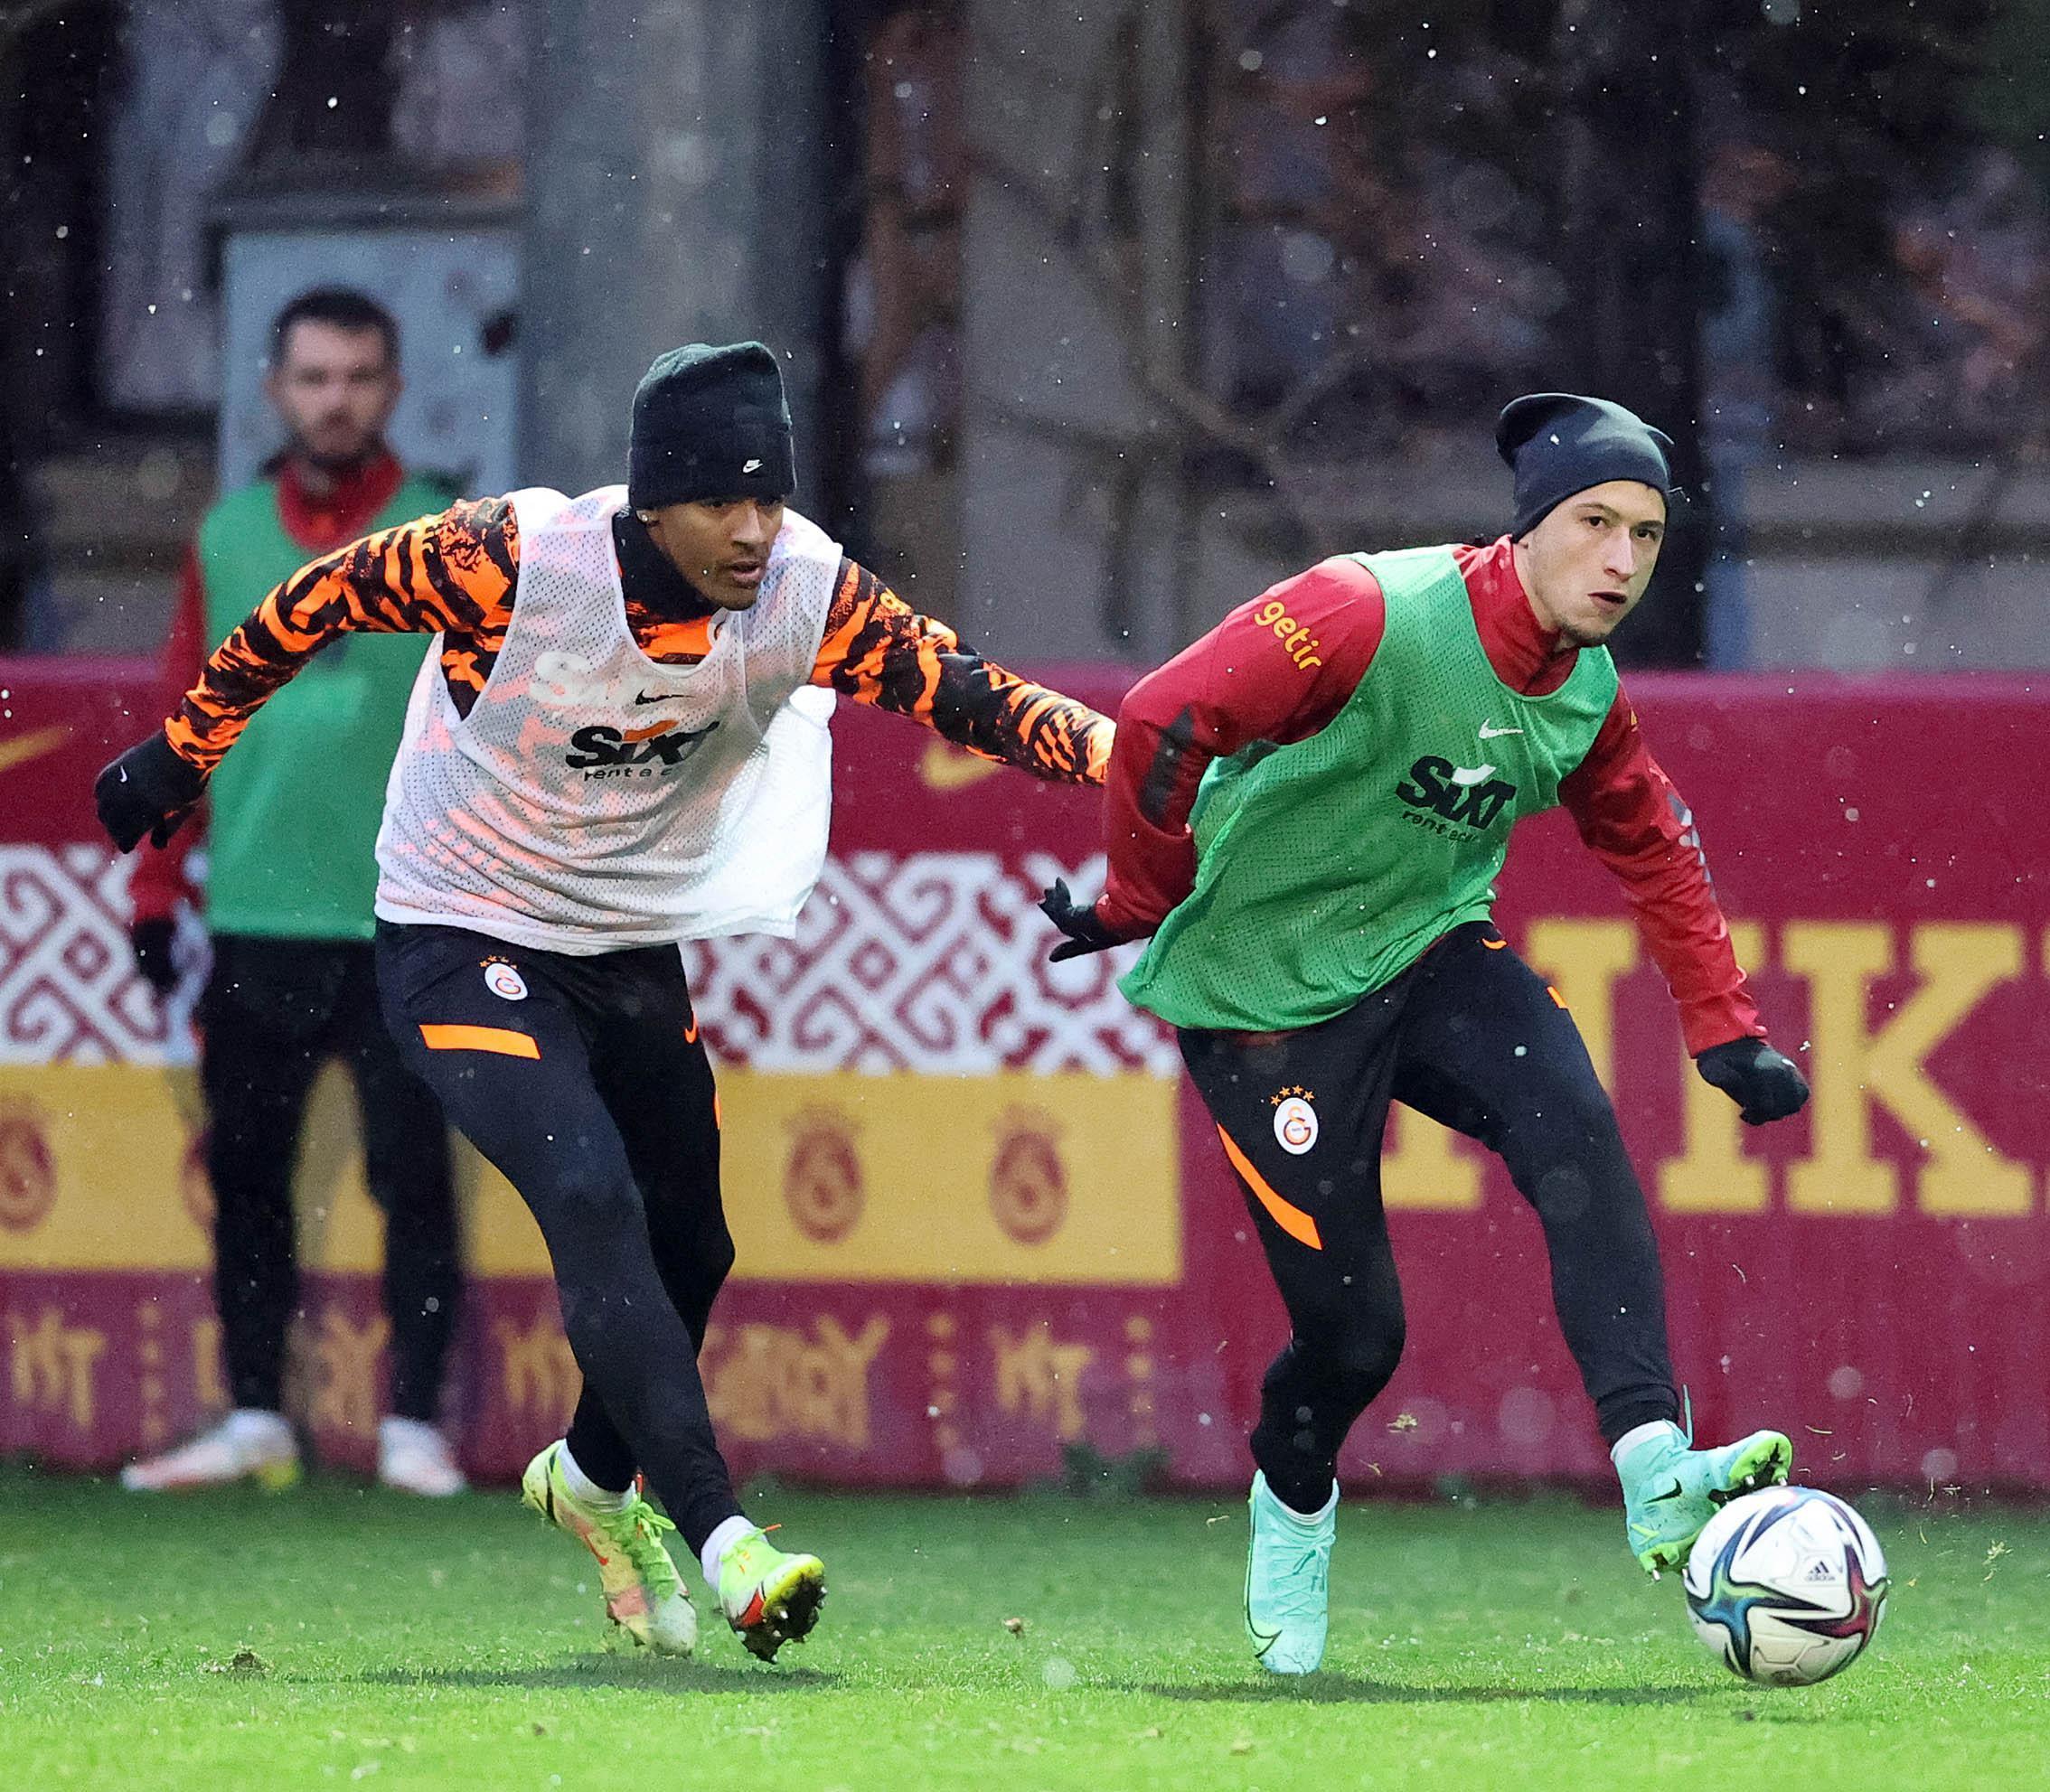 Domenec Torrentten, Galatasaraydaki ilk gününde çift idman